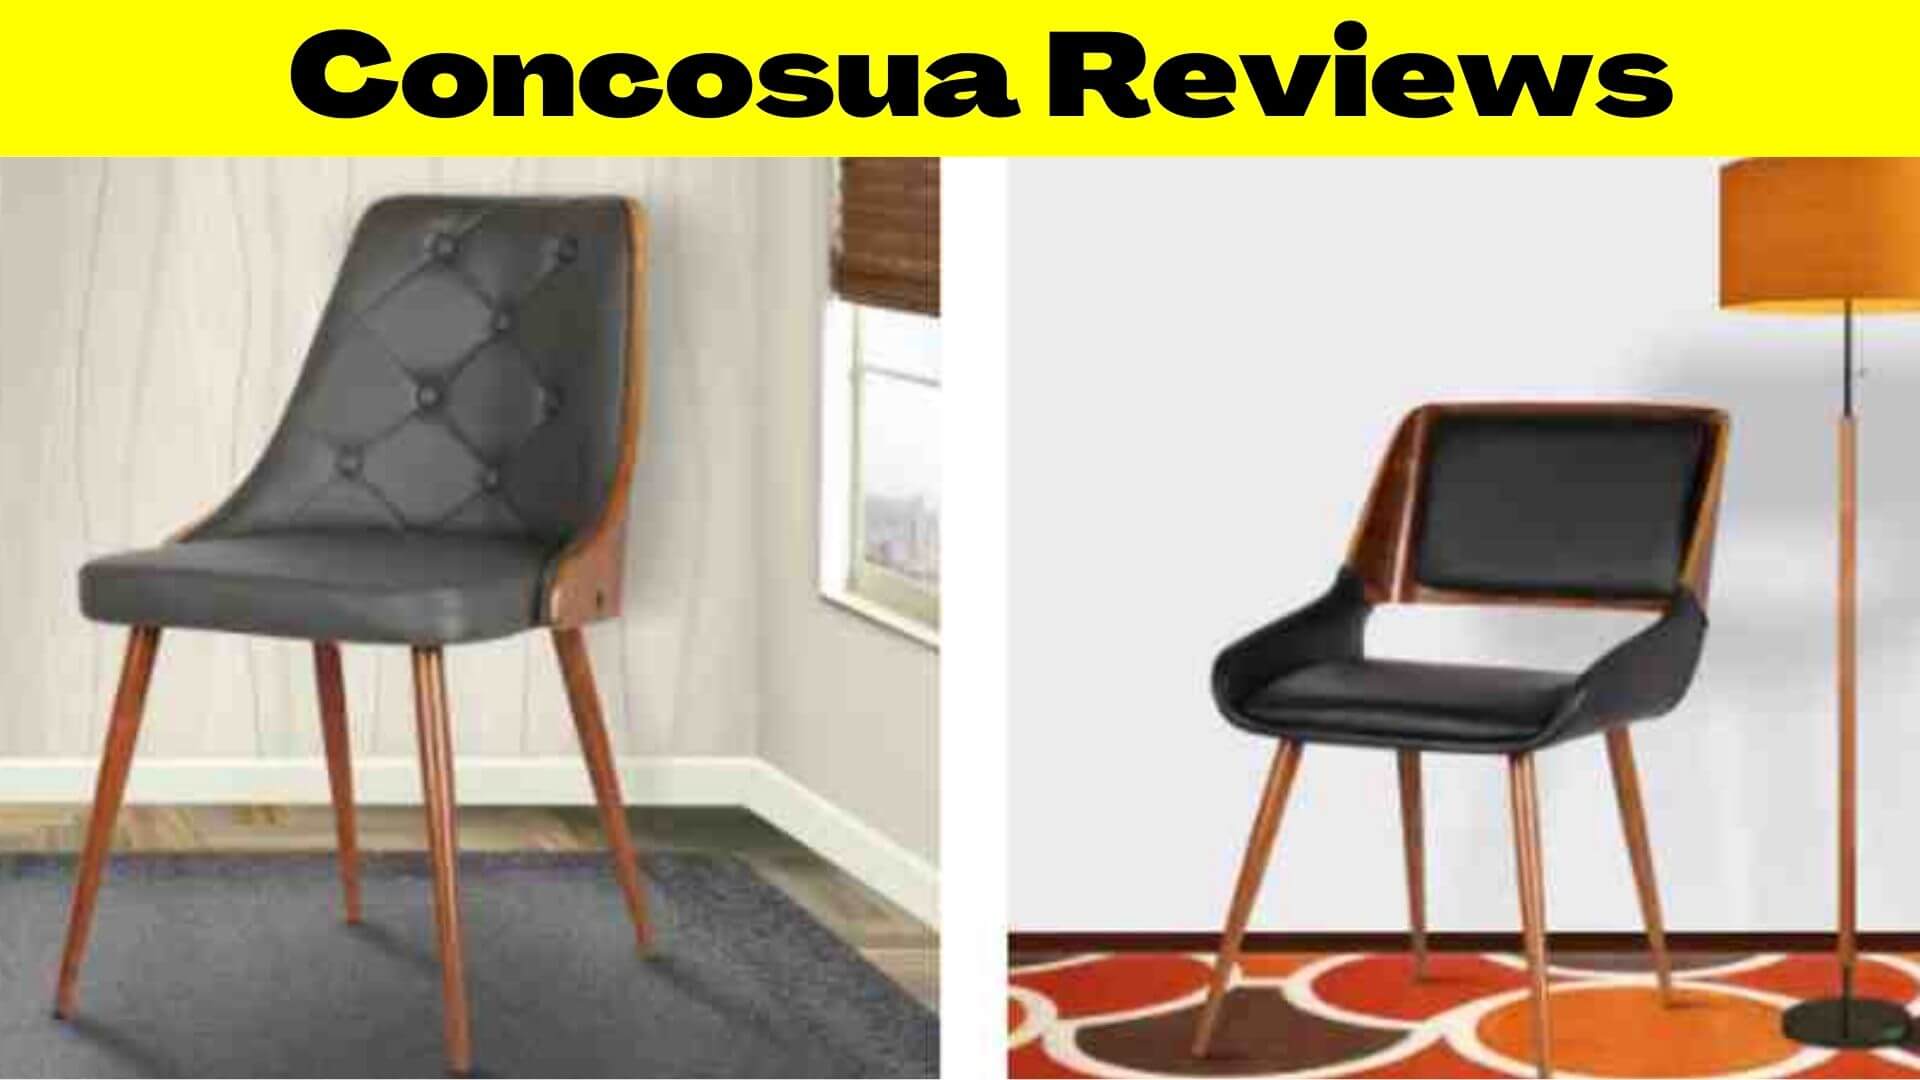 Concosua Reviews